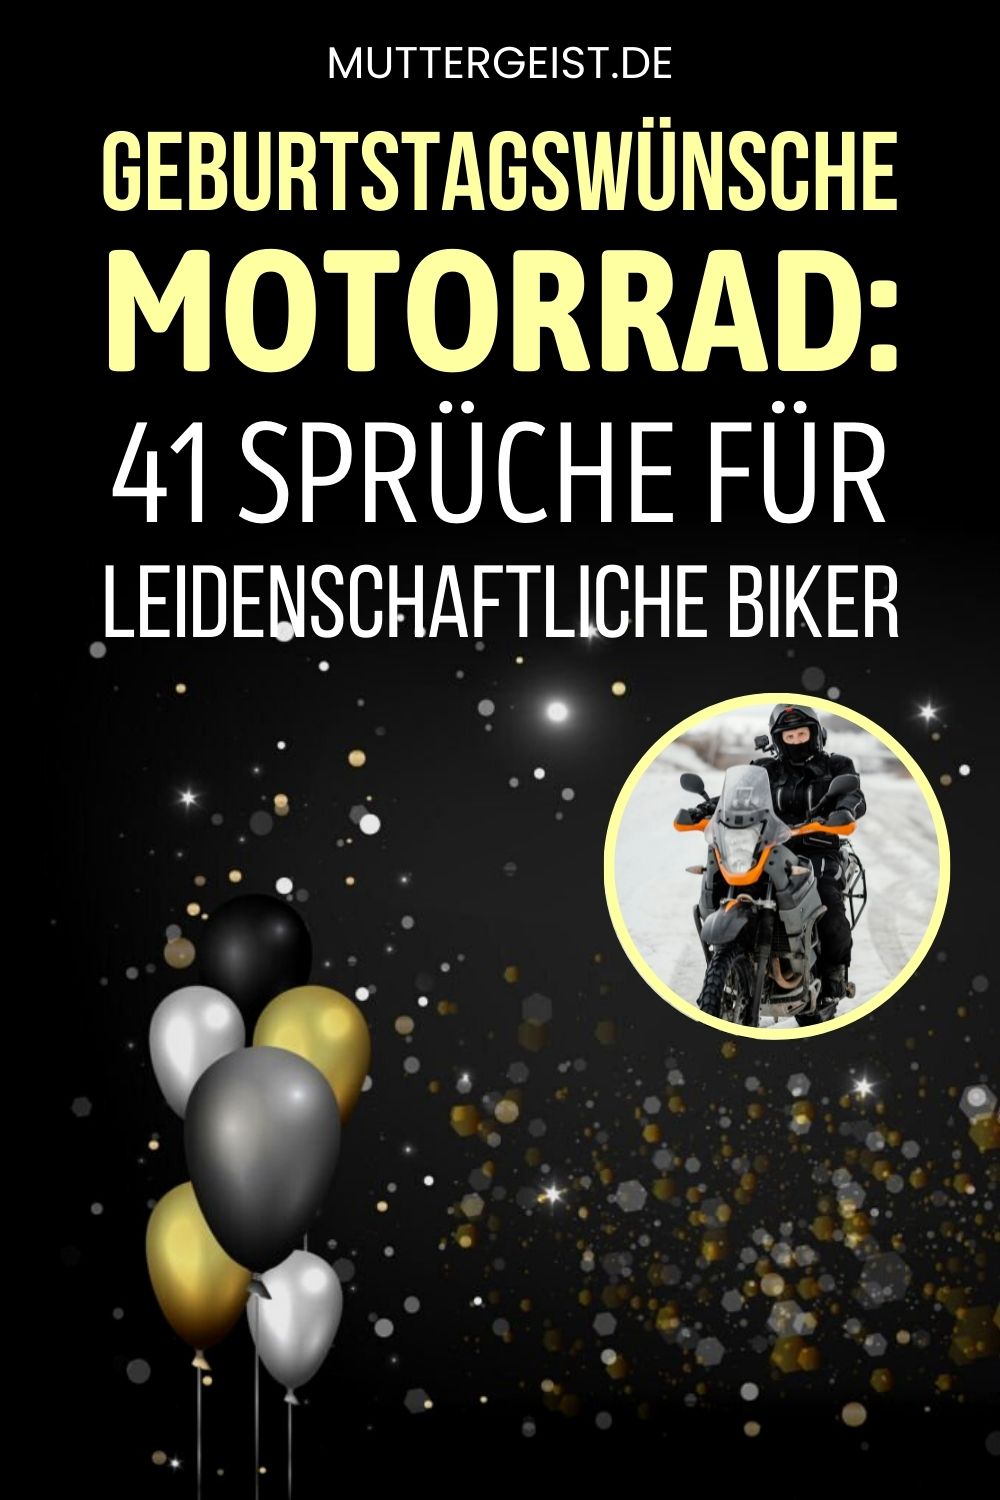 Geburtstagswünsche Motorrad – 41 Sprüche für leidenschaftliche Biker Pinterest